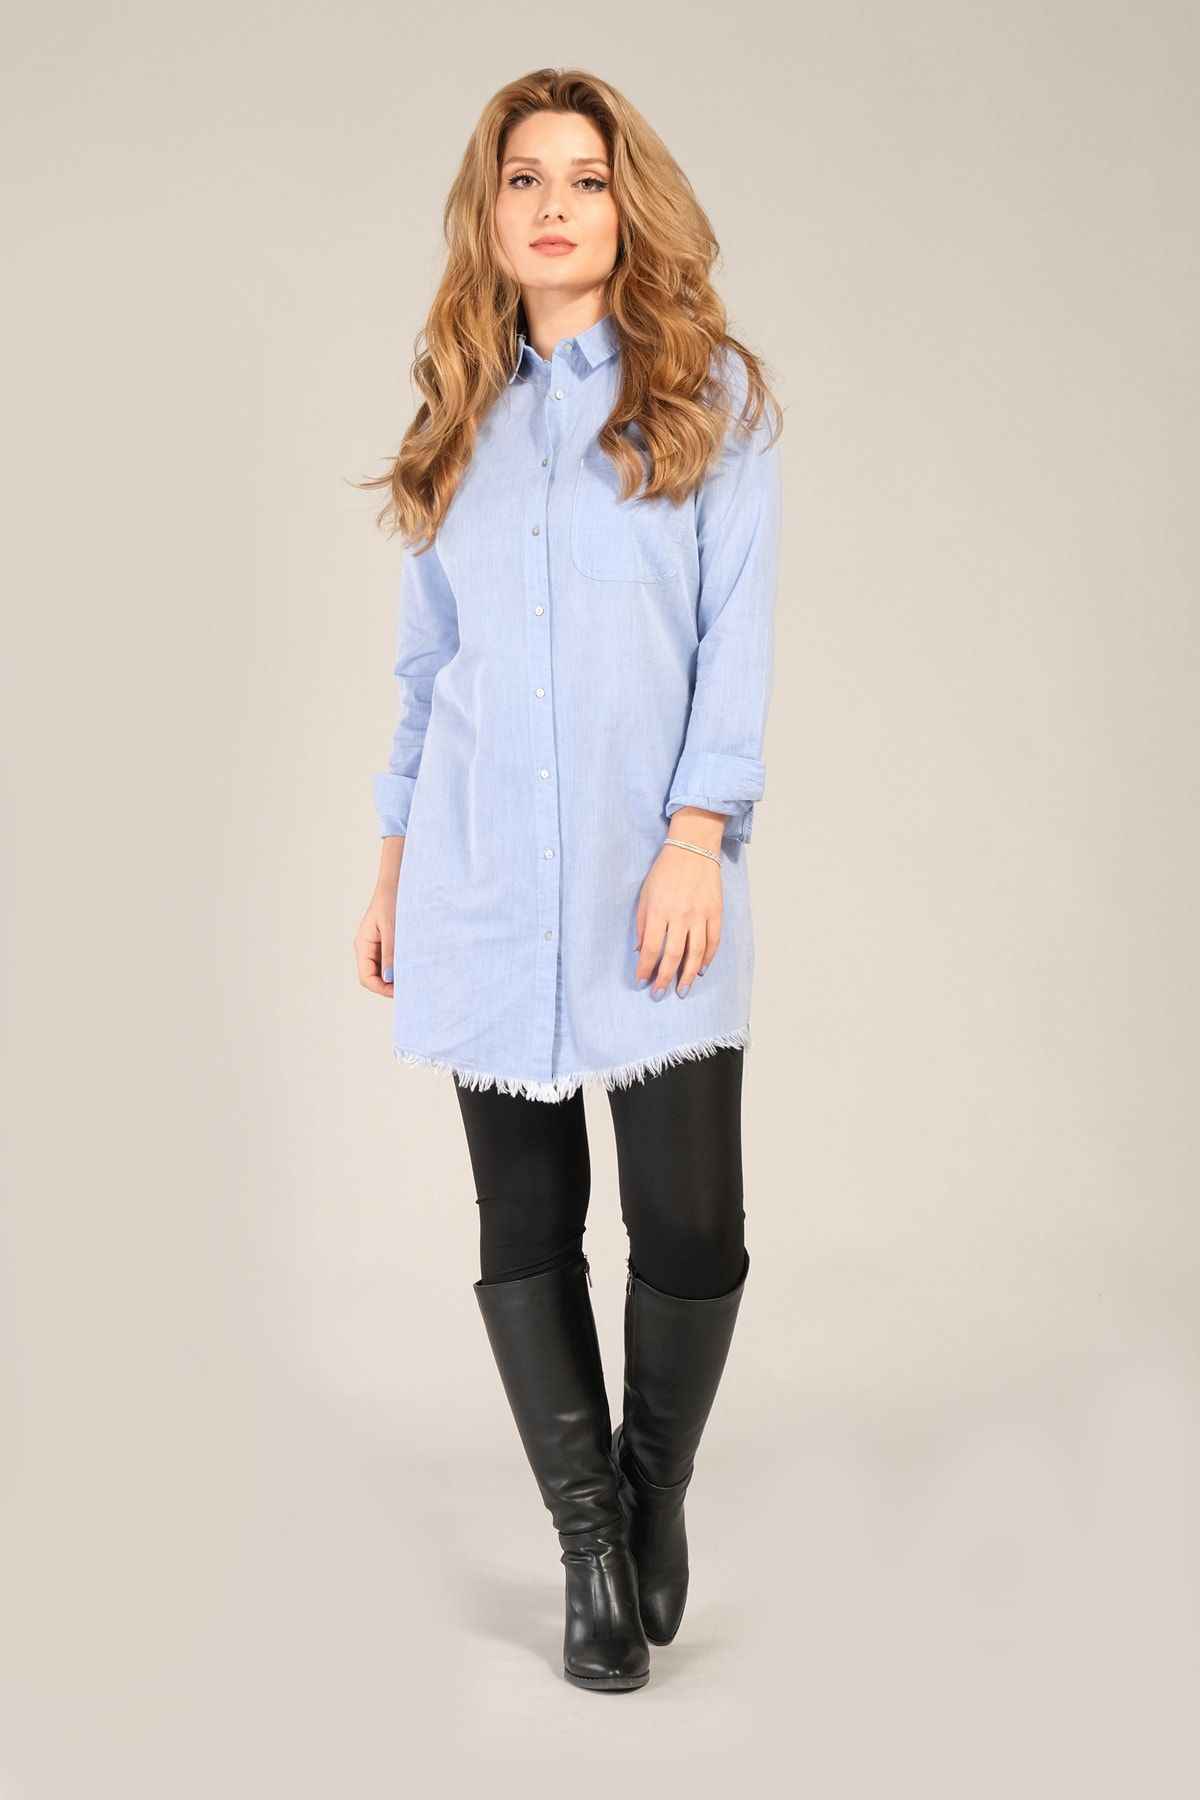 Giyim Dünyası Kadın Etek Ucu Püsküllü Tunik Gömlek Mavi